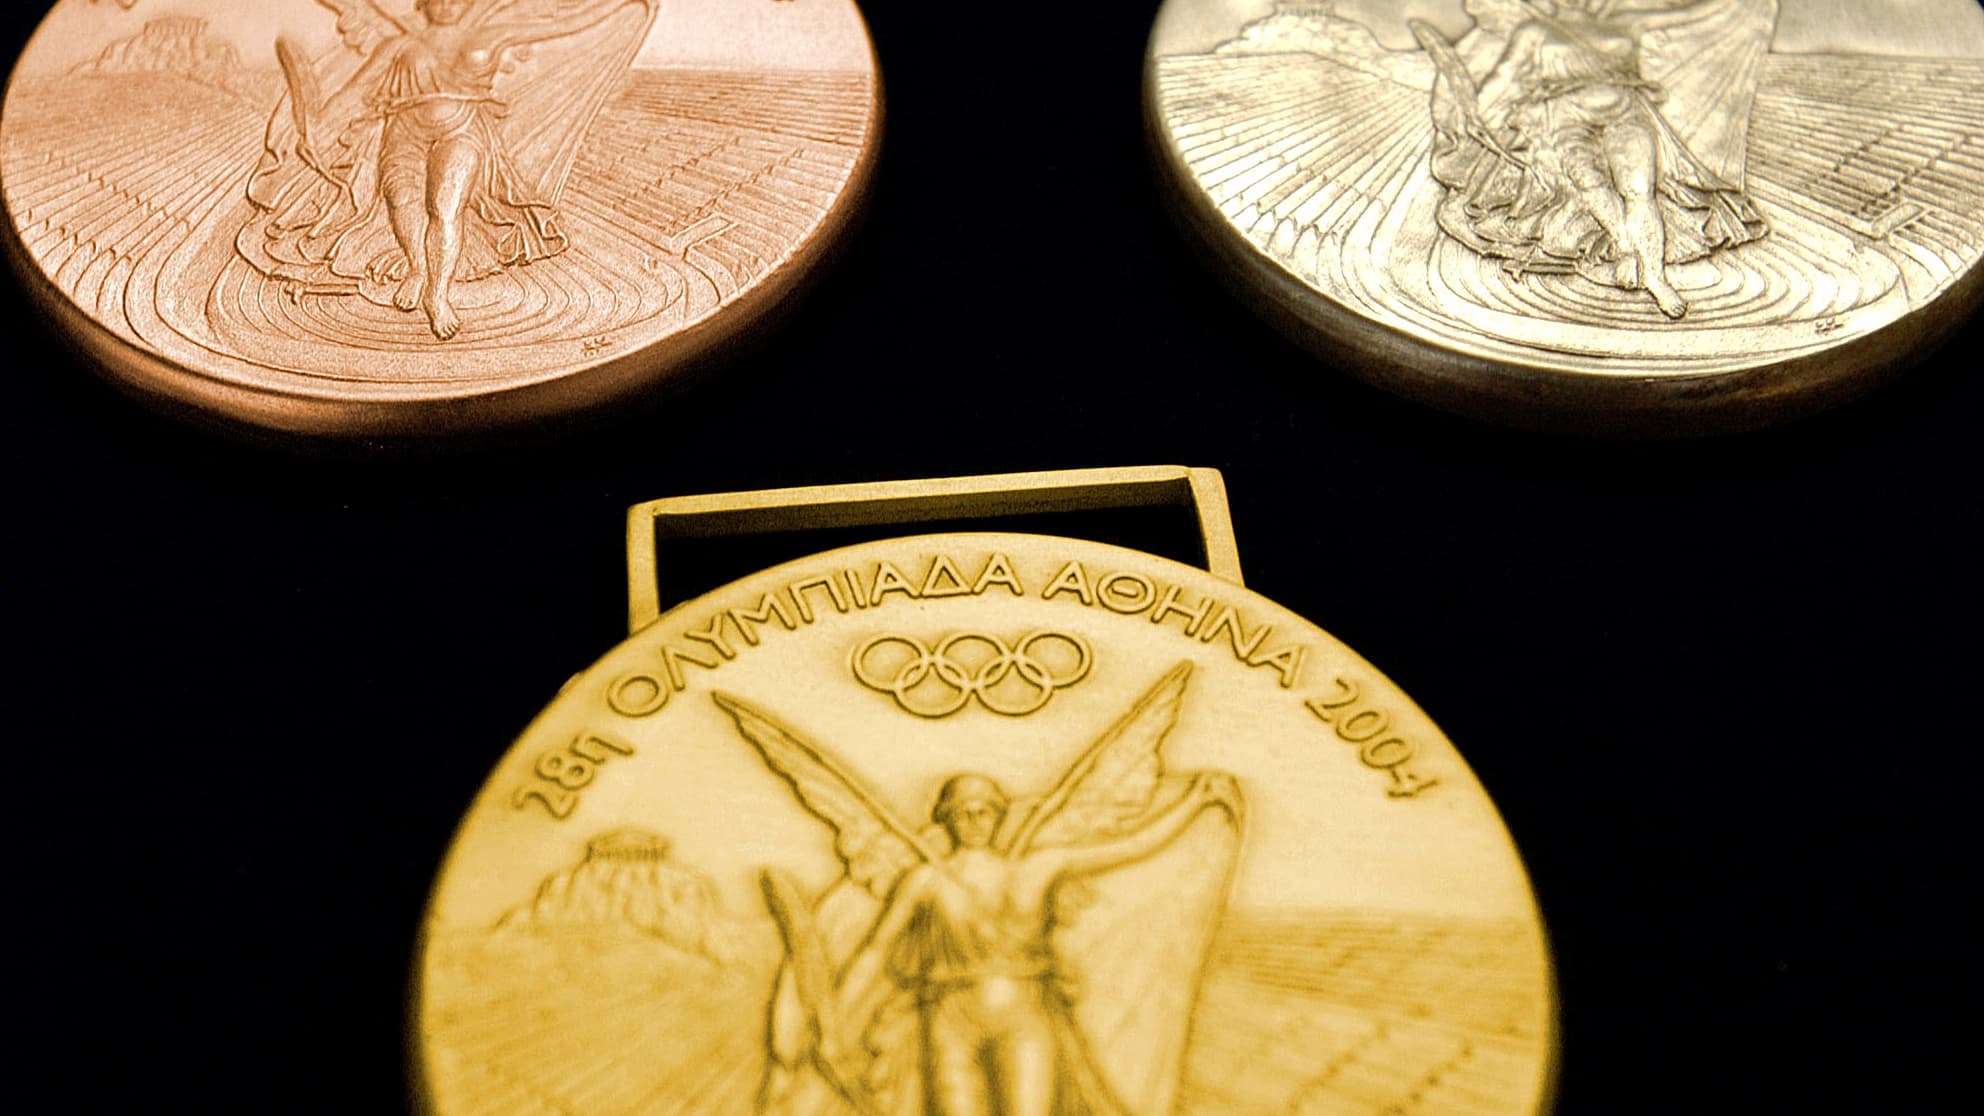 Первую золотую медаль на олимпийских играх. Медали Олимпийских игр Афины 2004. Золотая медаль Олимпийских игр Афины 2004. Медали олимпиады 2004.